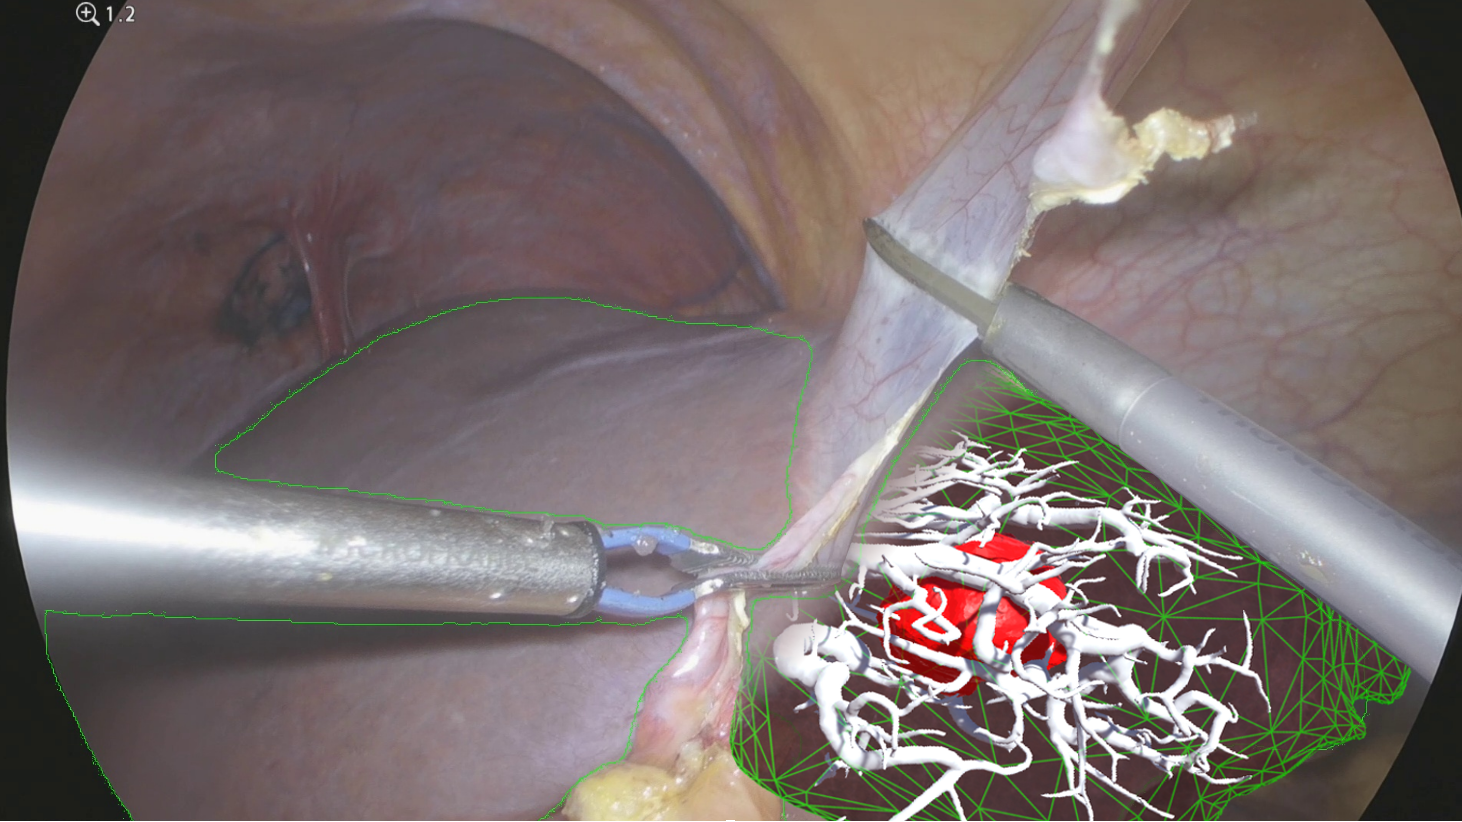 Exemple de visualisation de l'anatomie interne de foie pendant la chirurgie